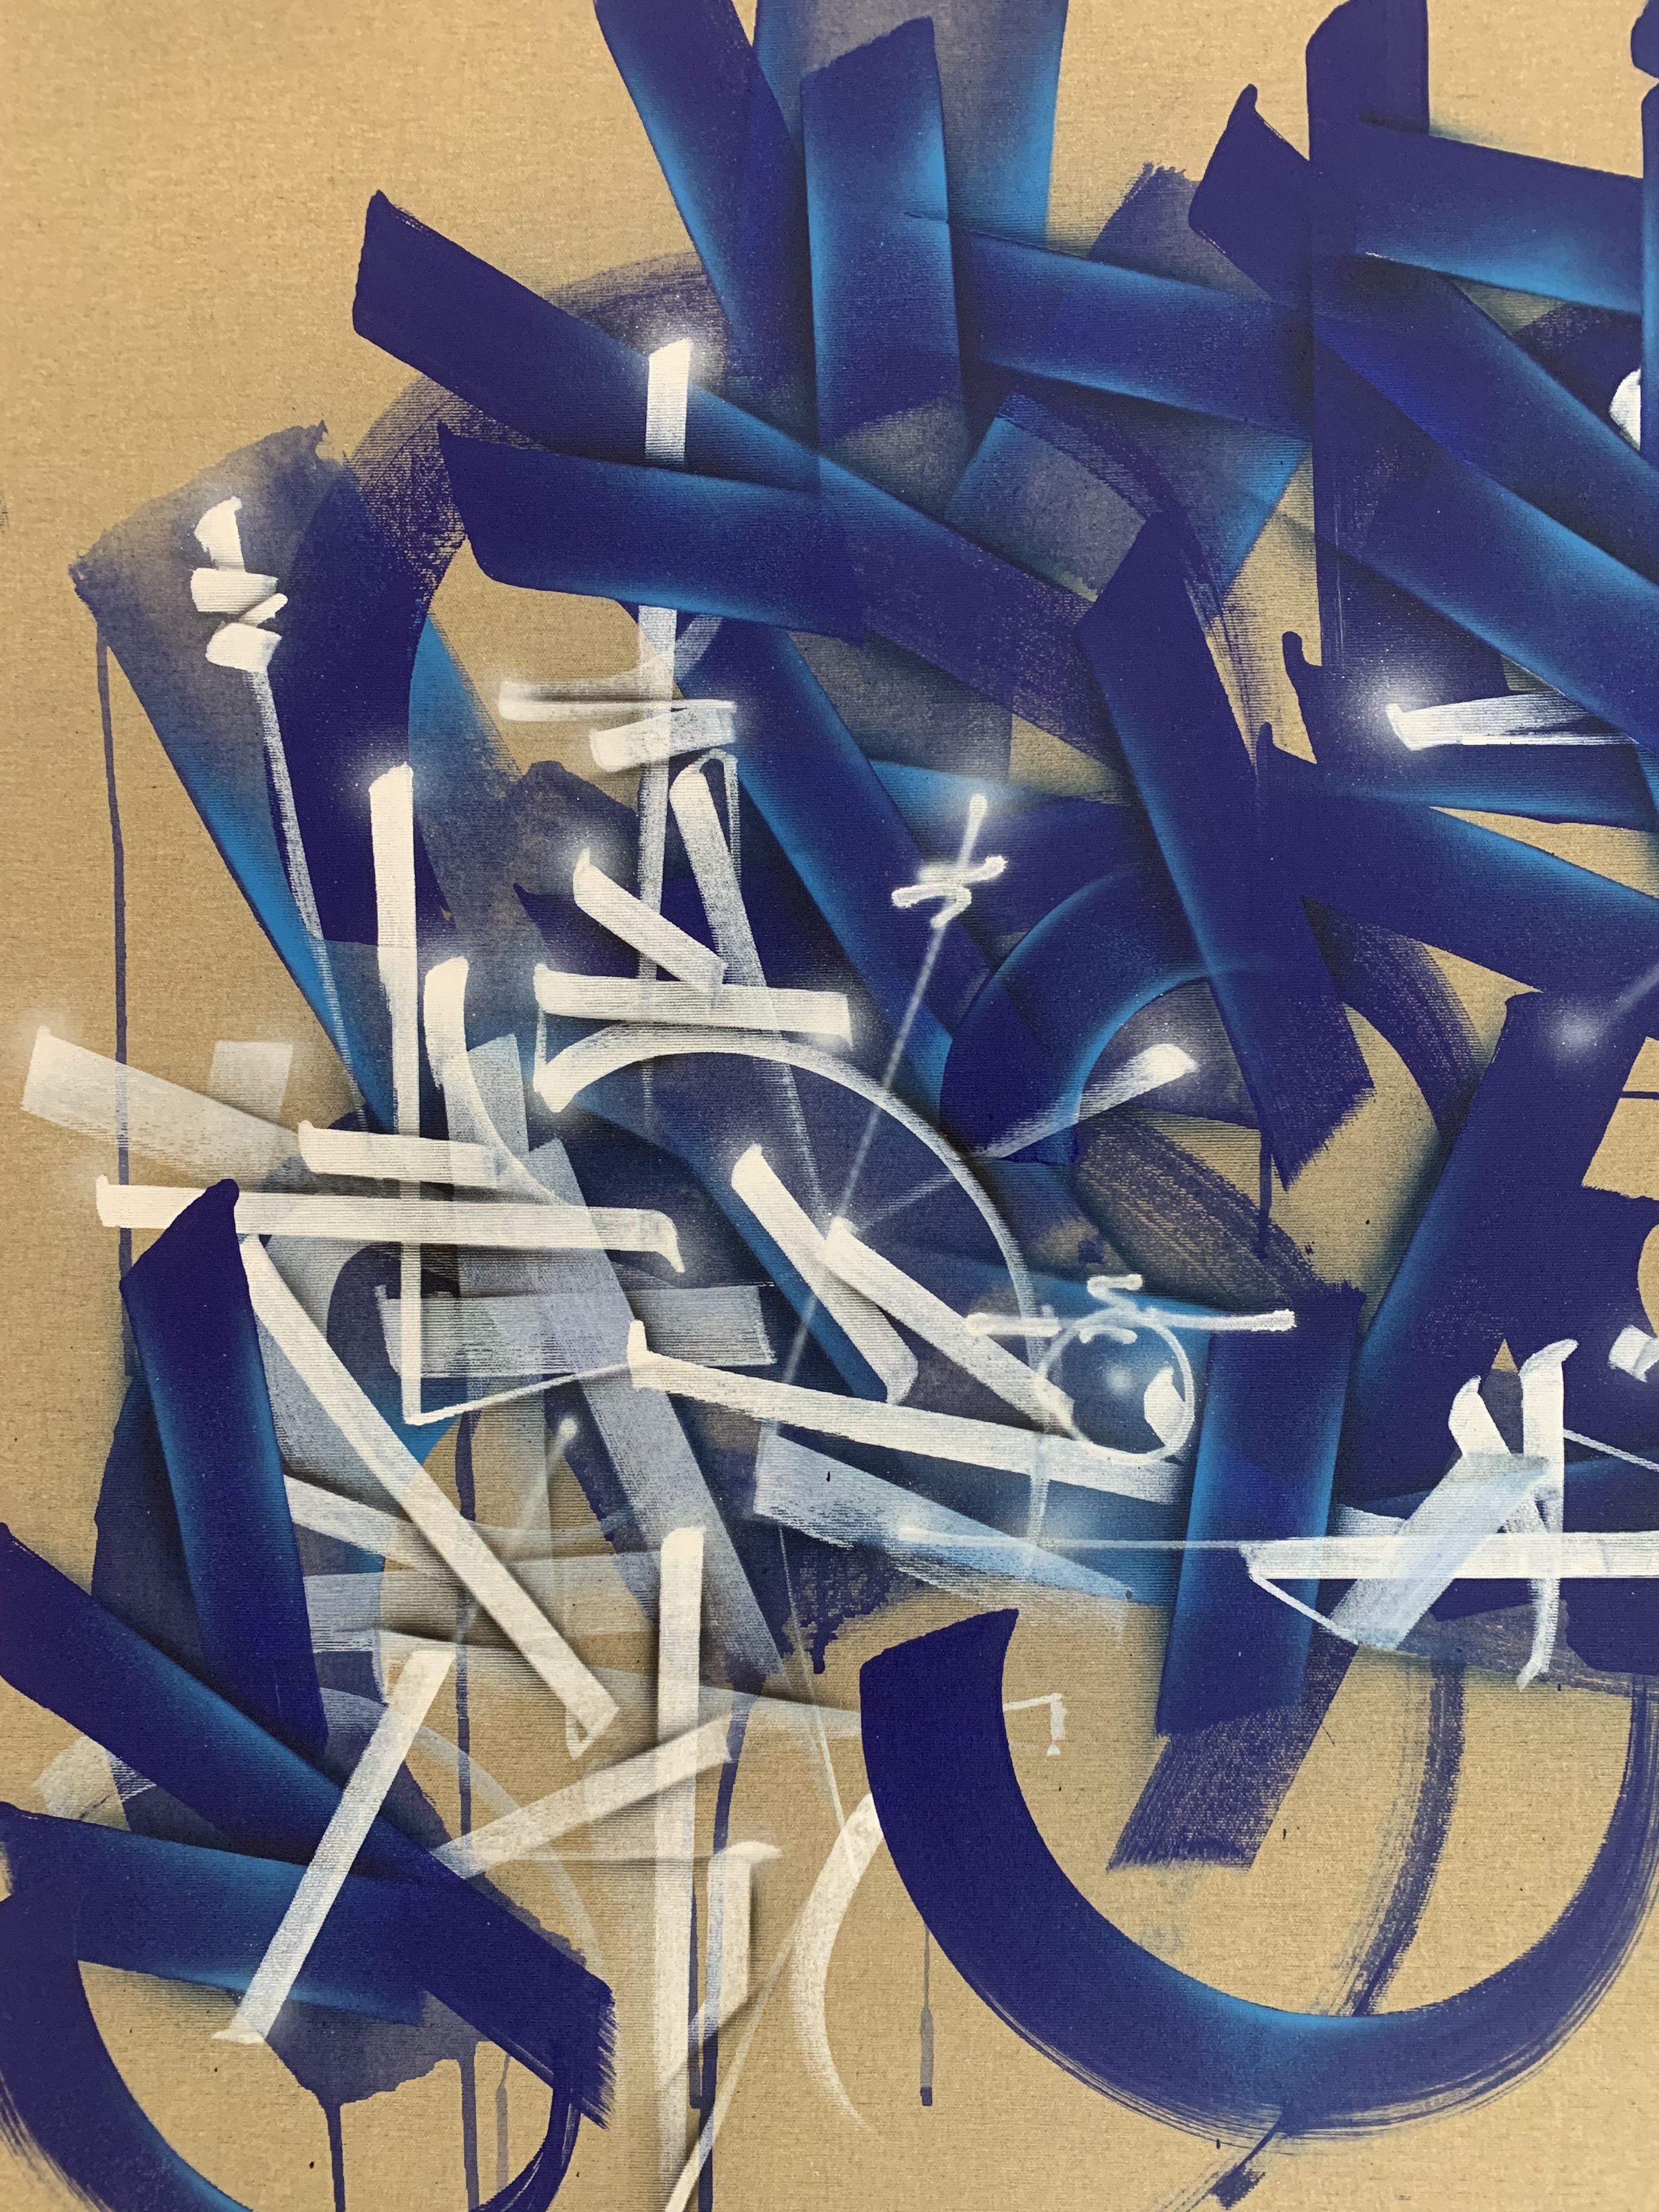 Der 1977 in Paris geborene Maler Soklak hat einen unverwechselbaren künstlerischen Weg eingeschlagen, der durch eine kühne Verschmelzung von Graffiti, Kalligrafie und Abstraktion gekennzeichnet ist.
1986 erlebte der junge Soklak seine erste